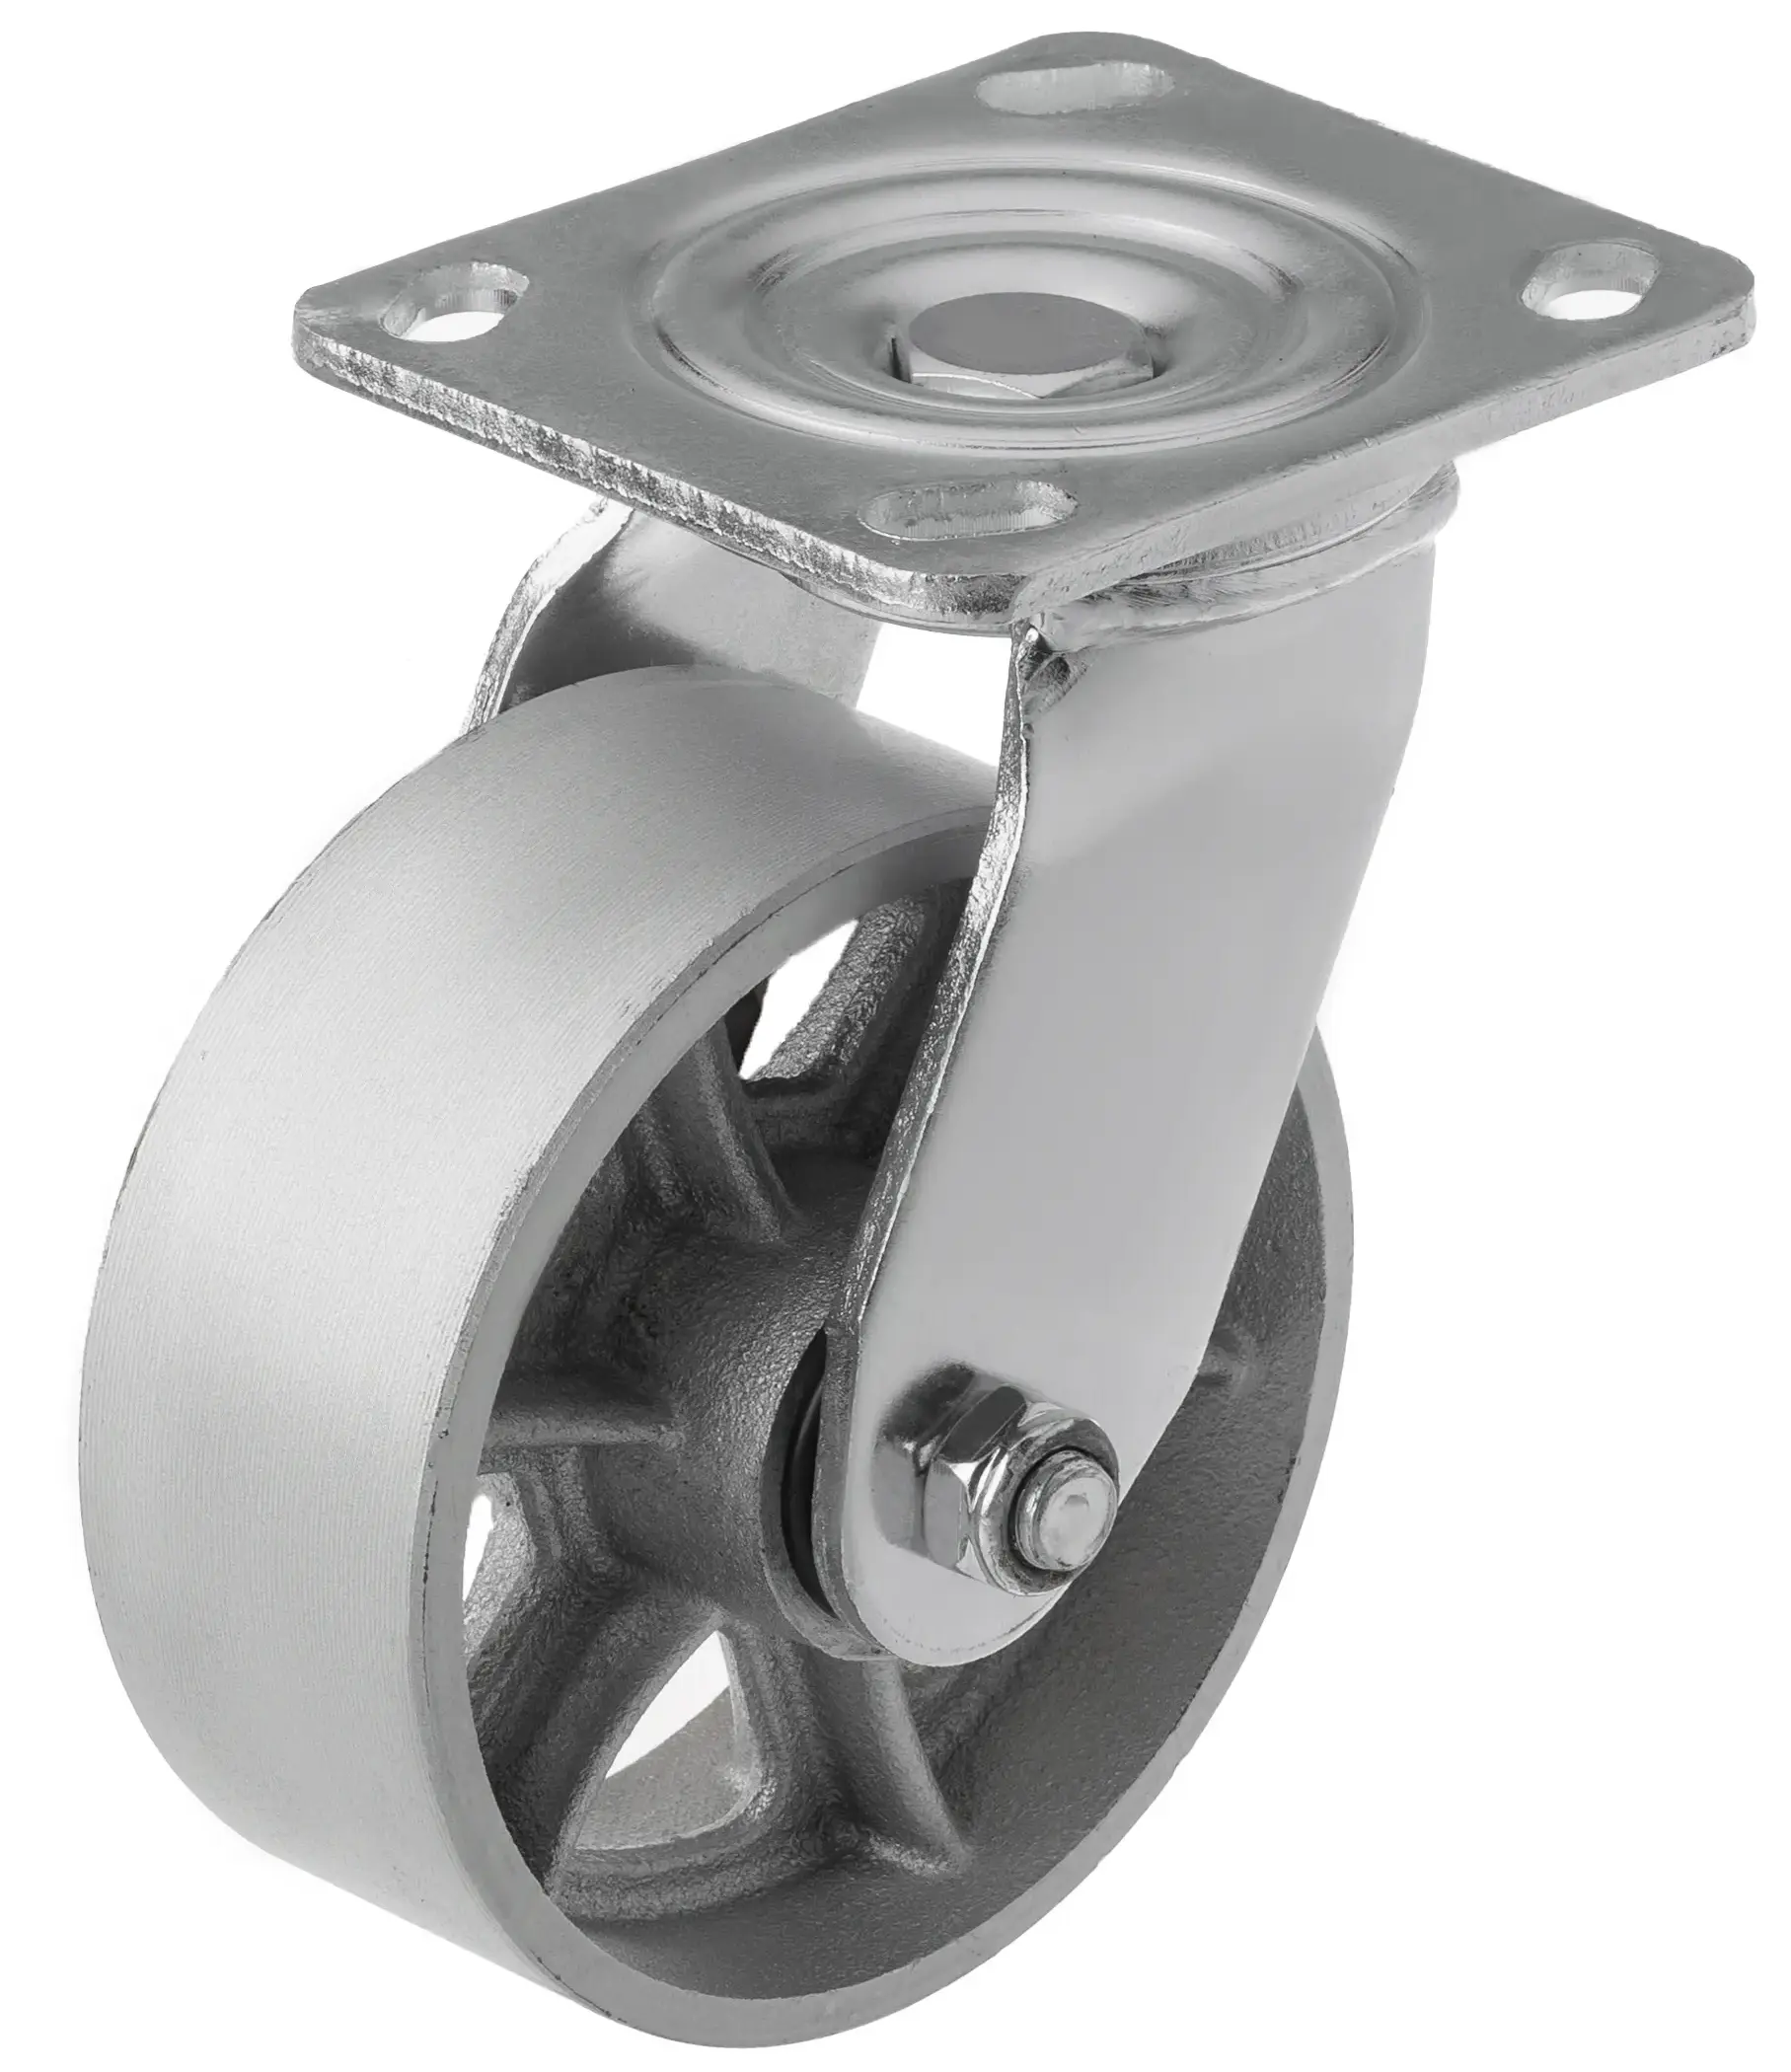 SCs 55 - Большегрузное чугунное колесо без резины 125 мм (поворот., площадка, темн. обод.)